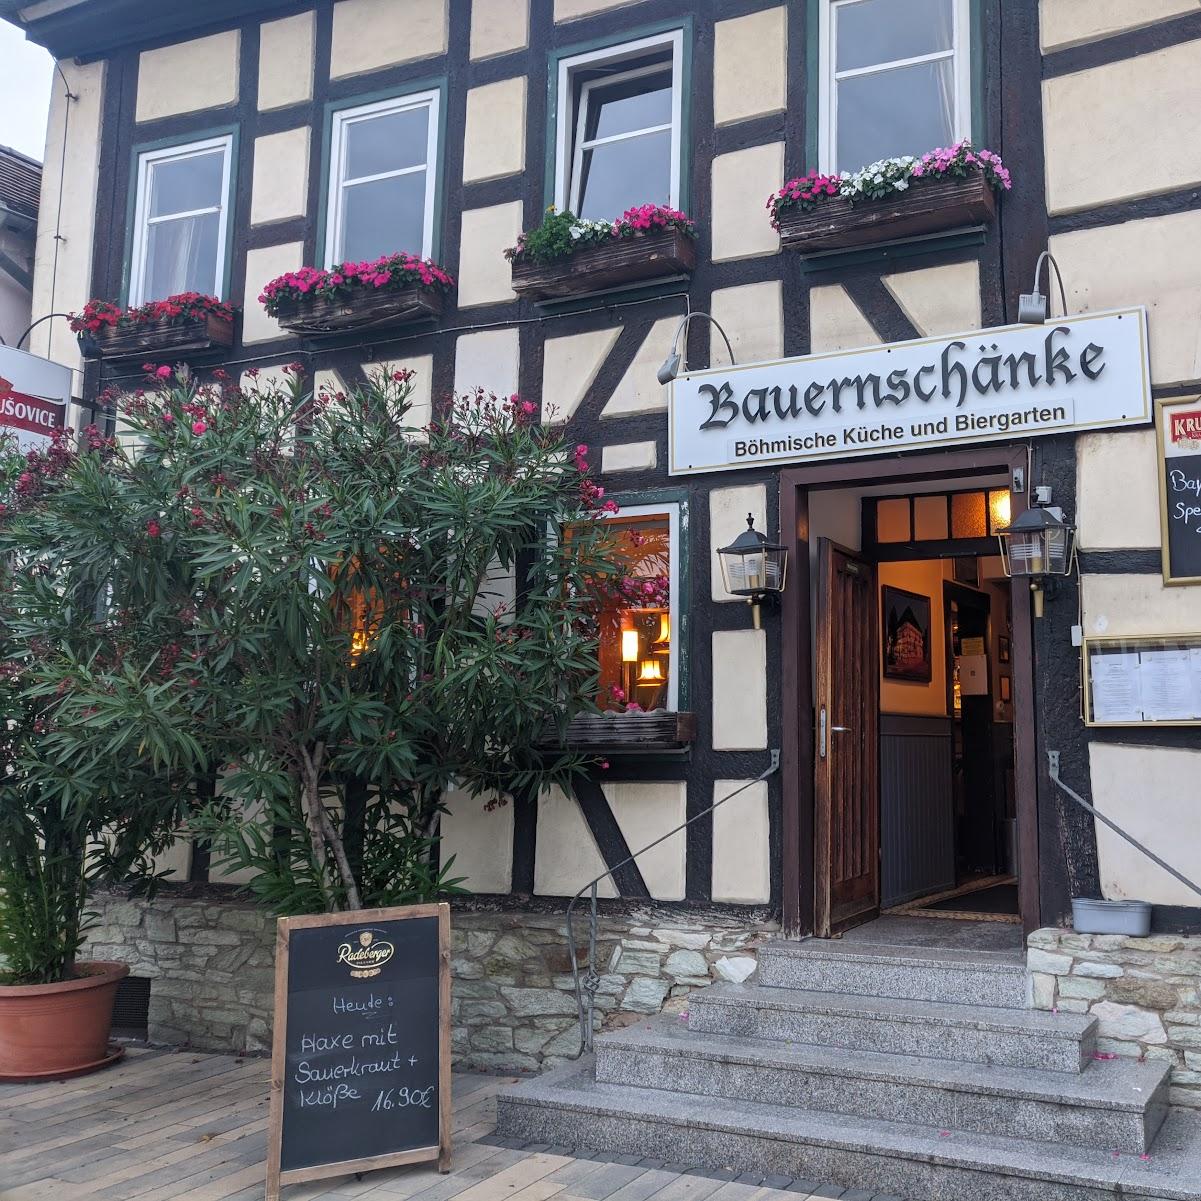 Restaurant "Bauernschänke" in Eschborn